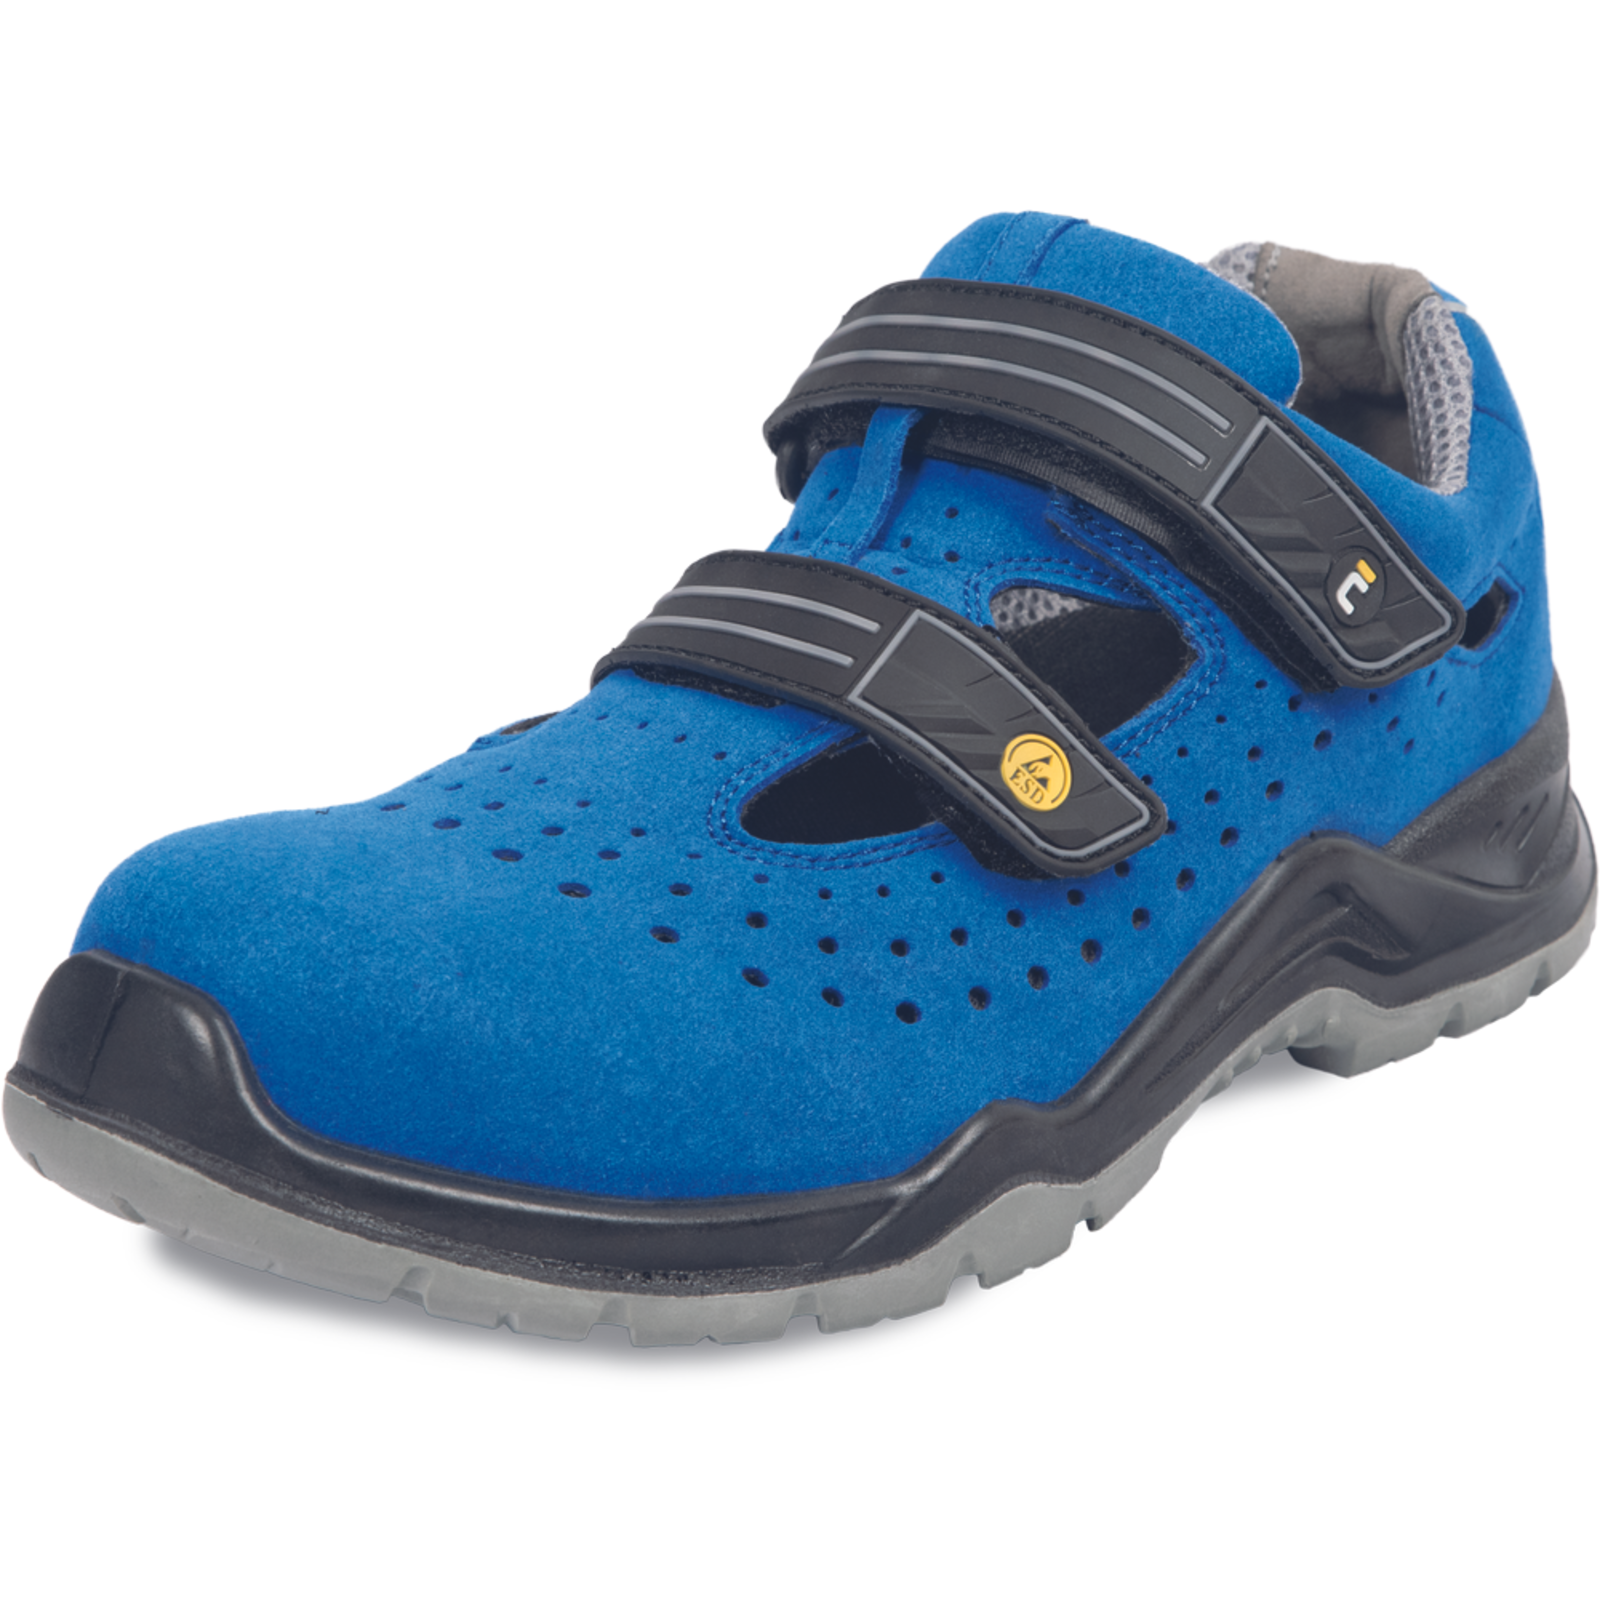 Bezpečnostné pracovné sandále Cerva Hagewill S1P - veľkosť: 36, farba: modrá